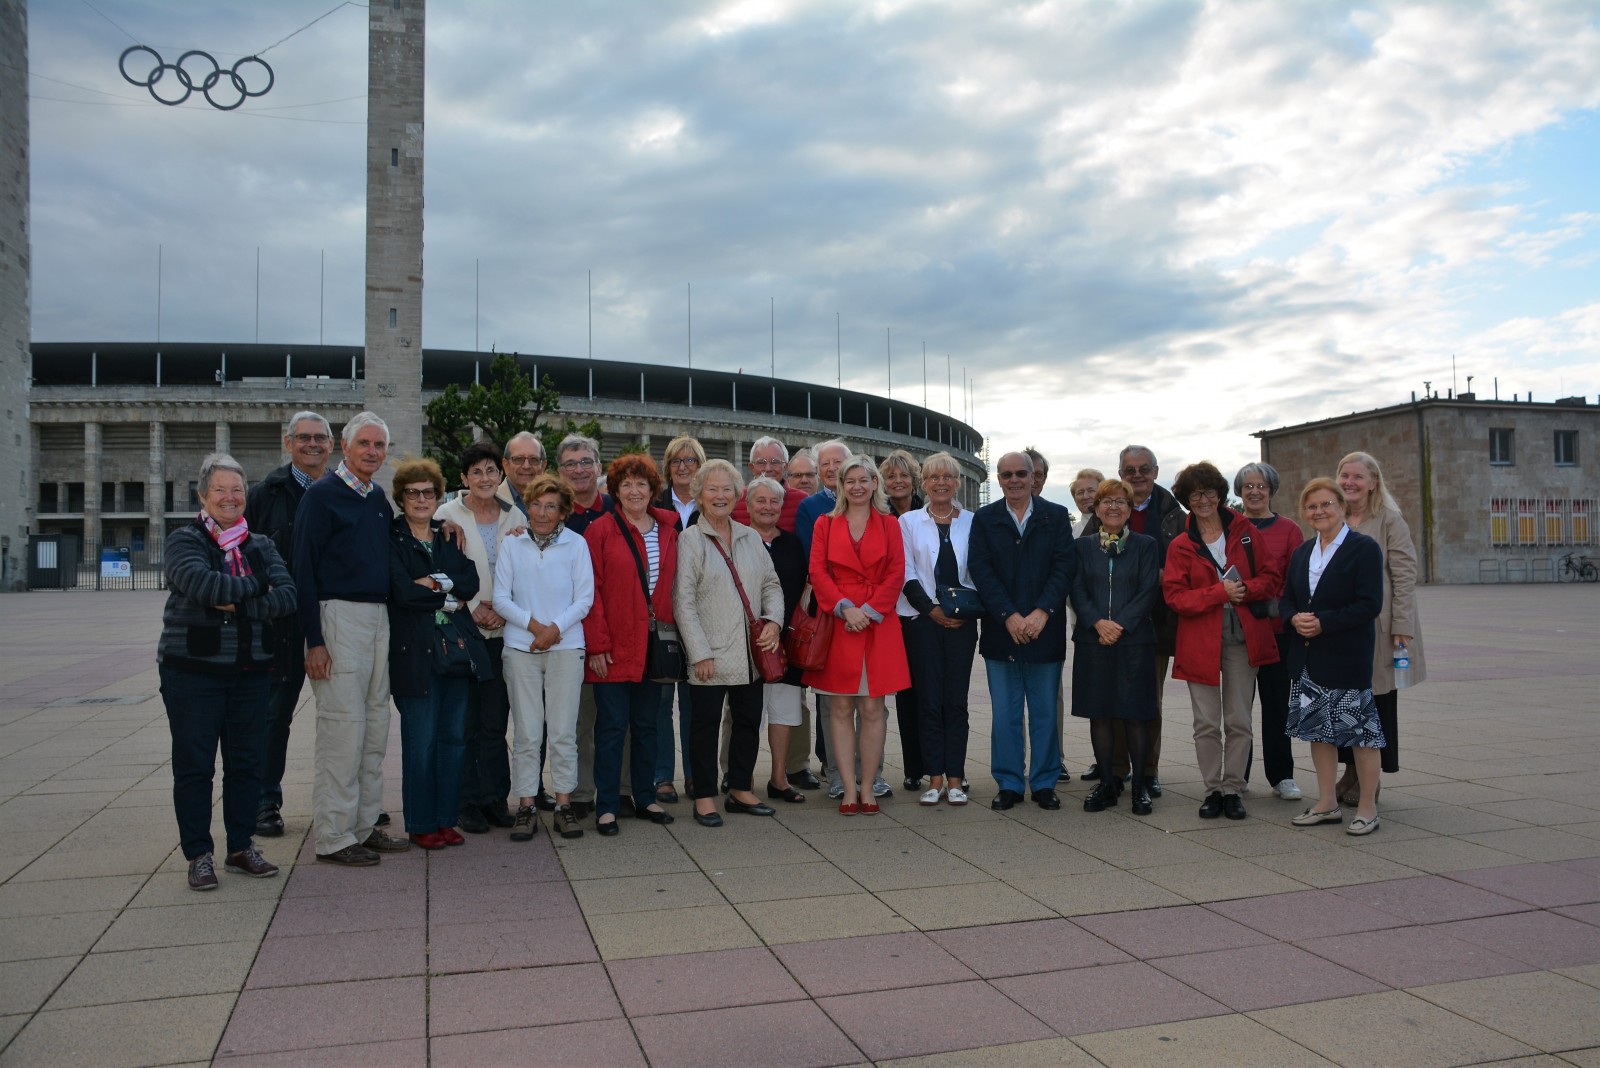 Le groupe devant le stade olympique avec Mme Kaiser, présidente de la section AMOPA de l’Allemagne du Nord